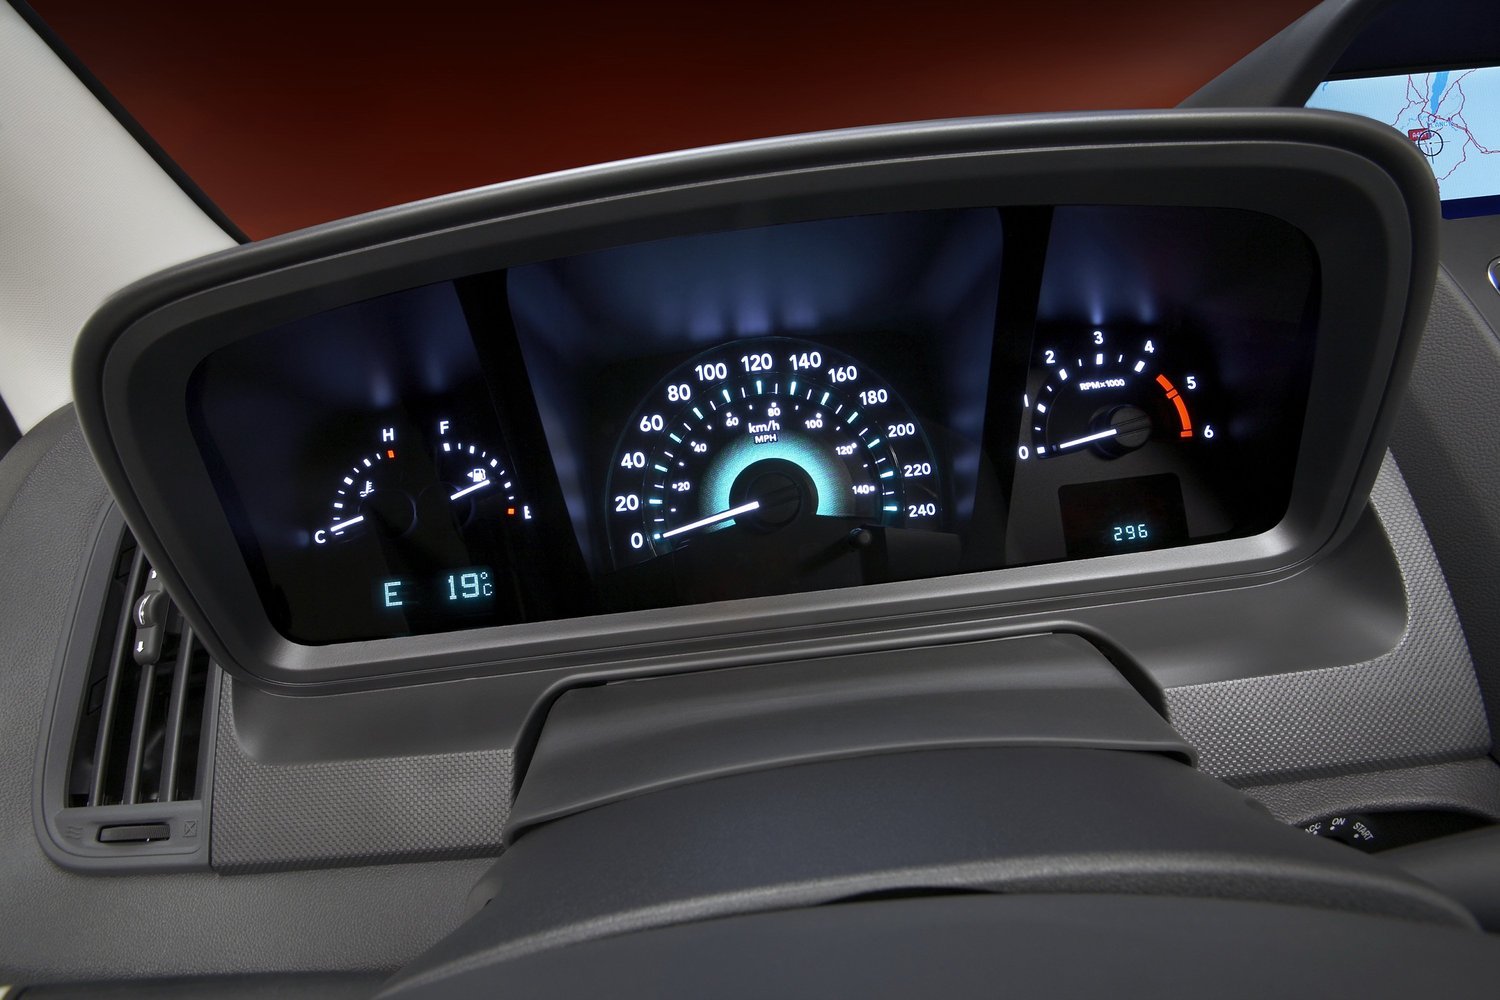 кроссовер Dodge Journey 2008 - 2016г выпуска модификация 2.4 MT (175 л.с.)